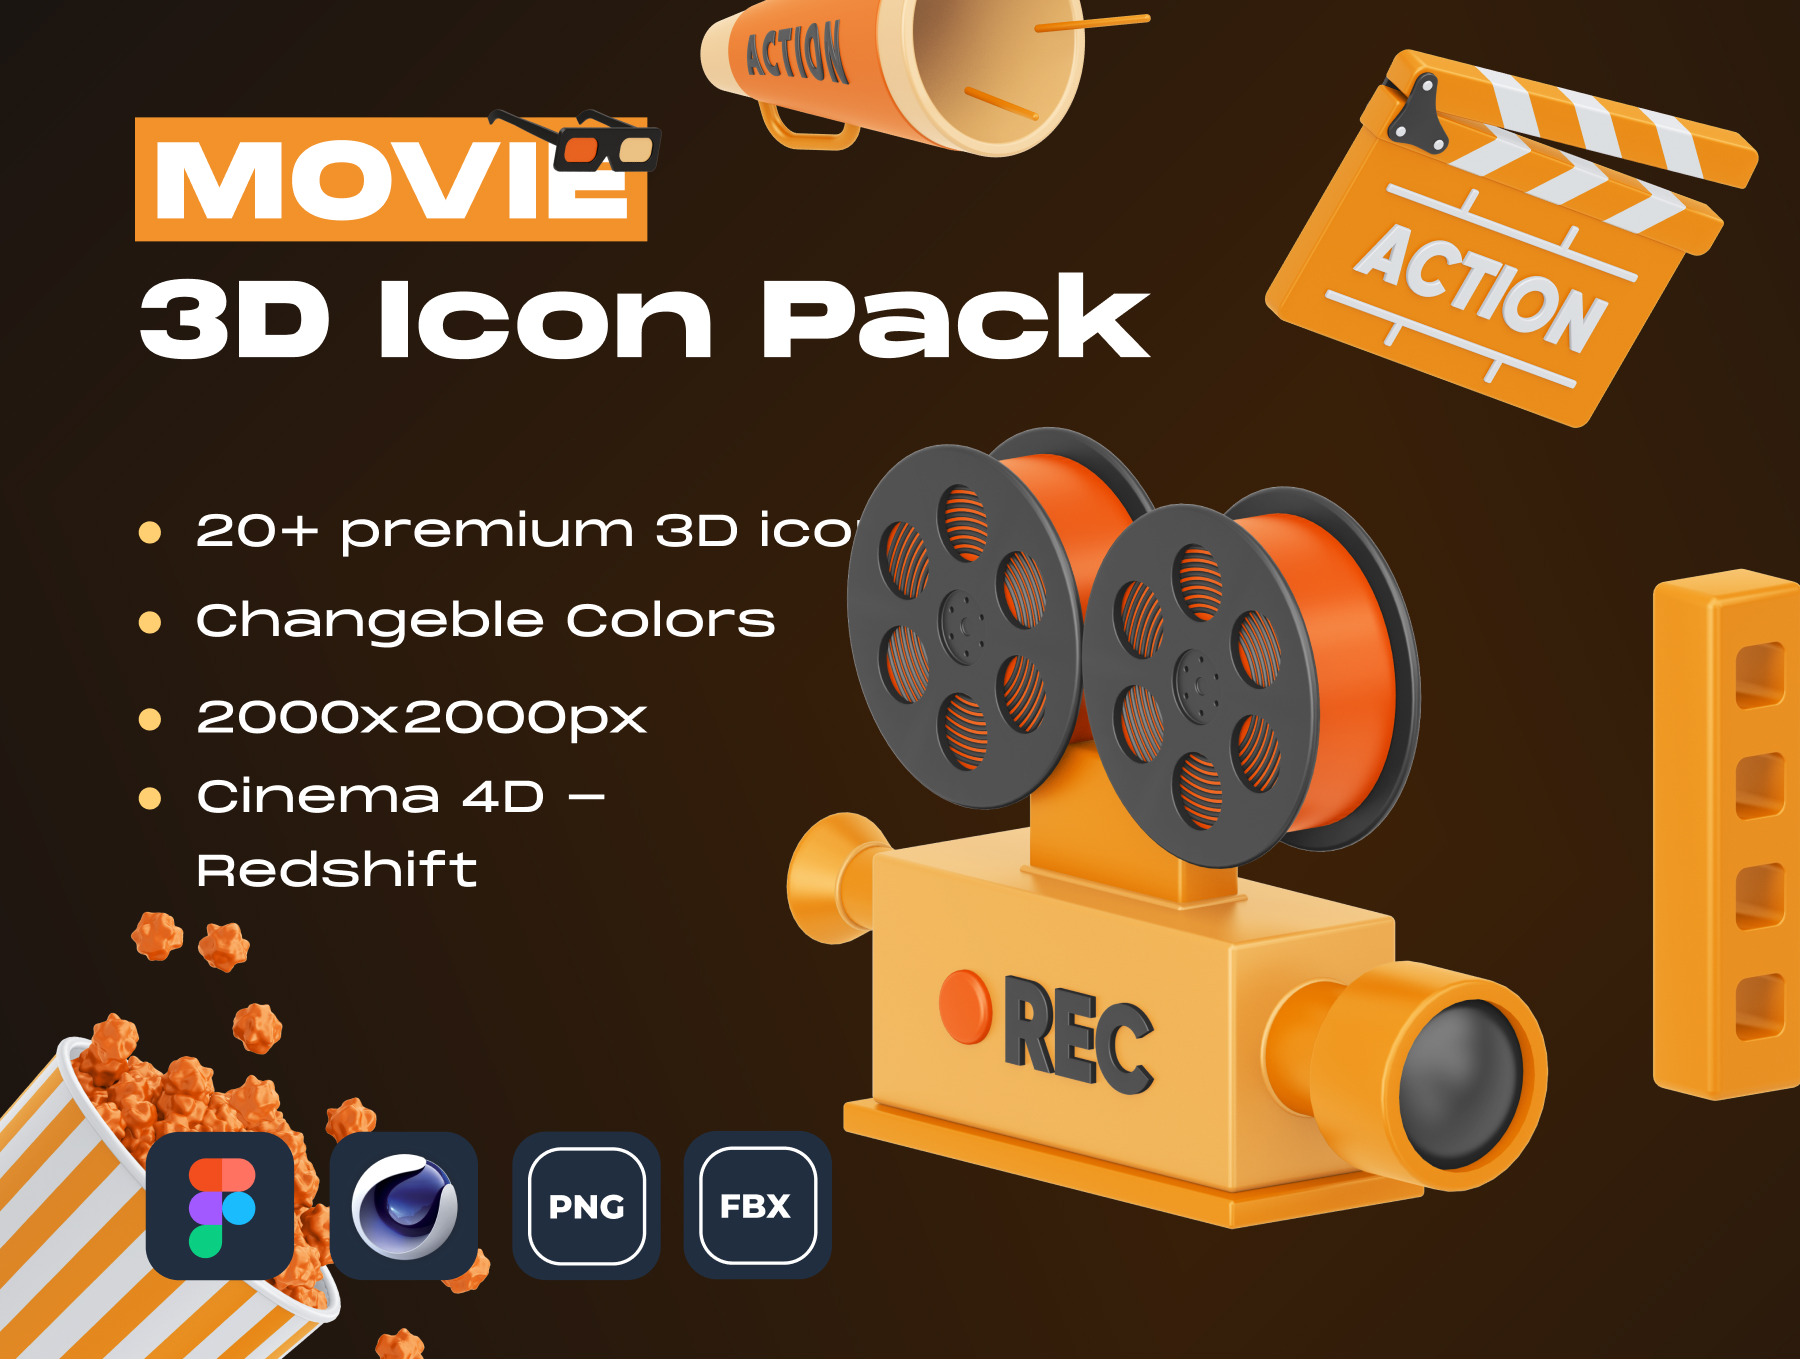 精致自定义电影类 3D 图标素材MOVIE! 3D Icon Pack插图